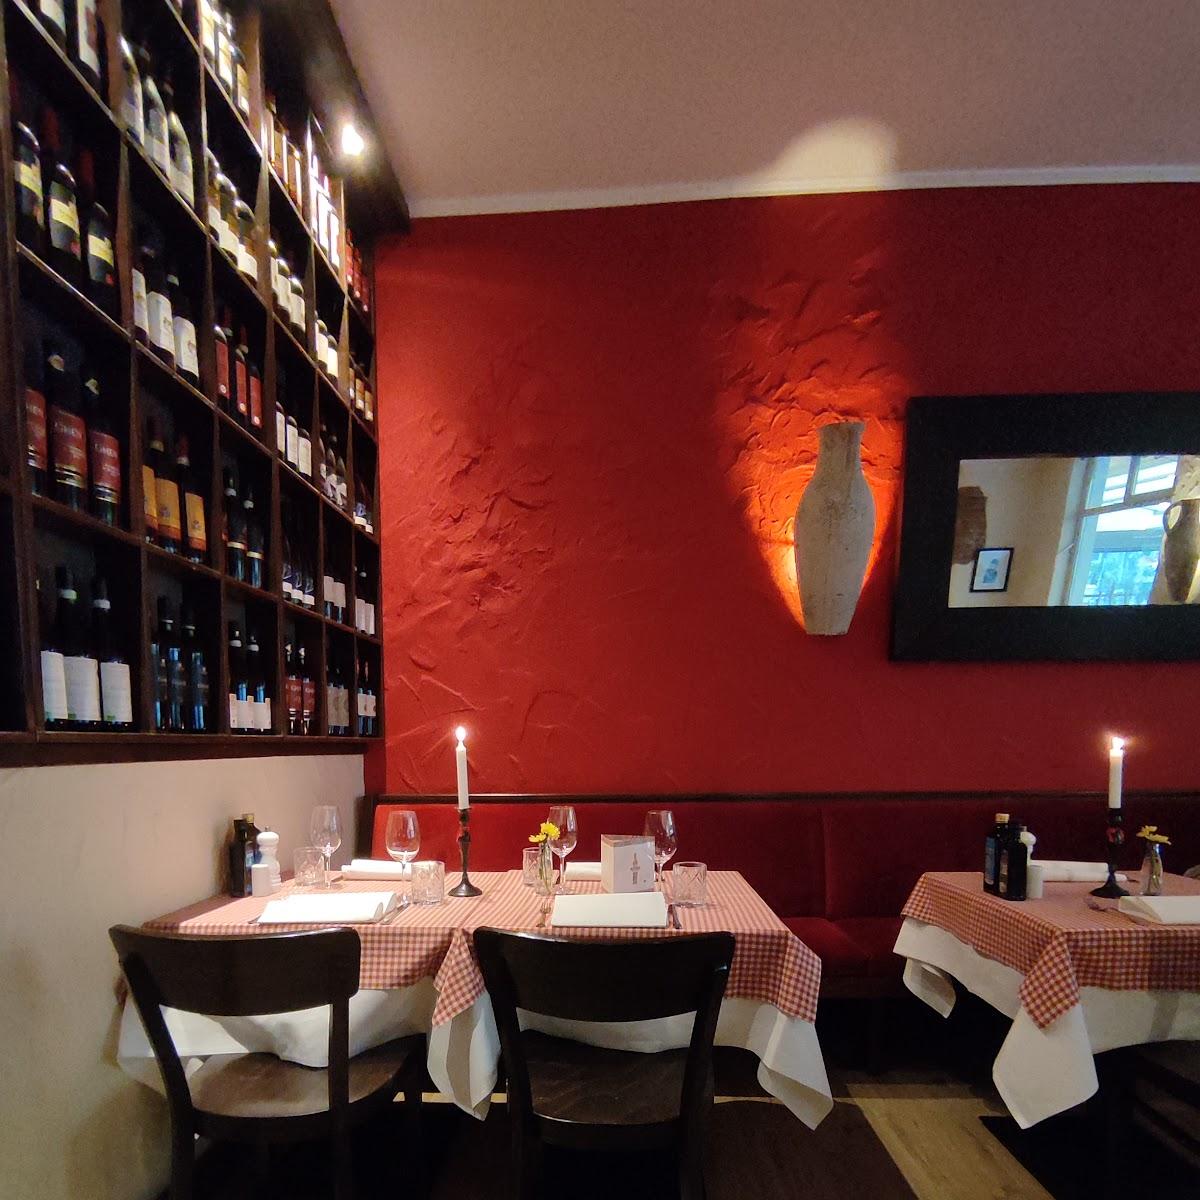 Restaurant "Sale e Pane - Berlin" in Berlin